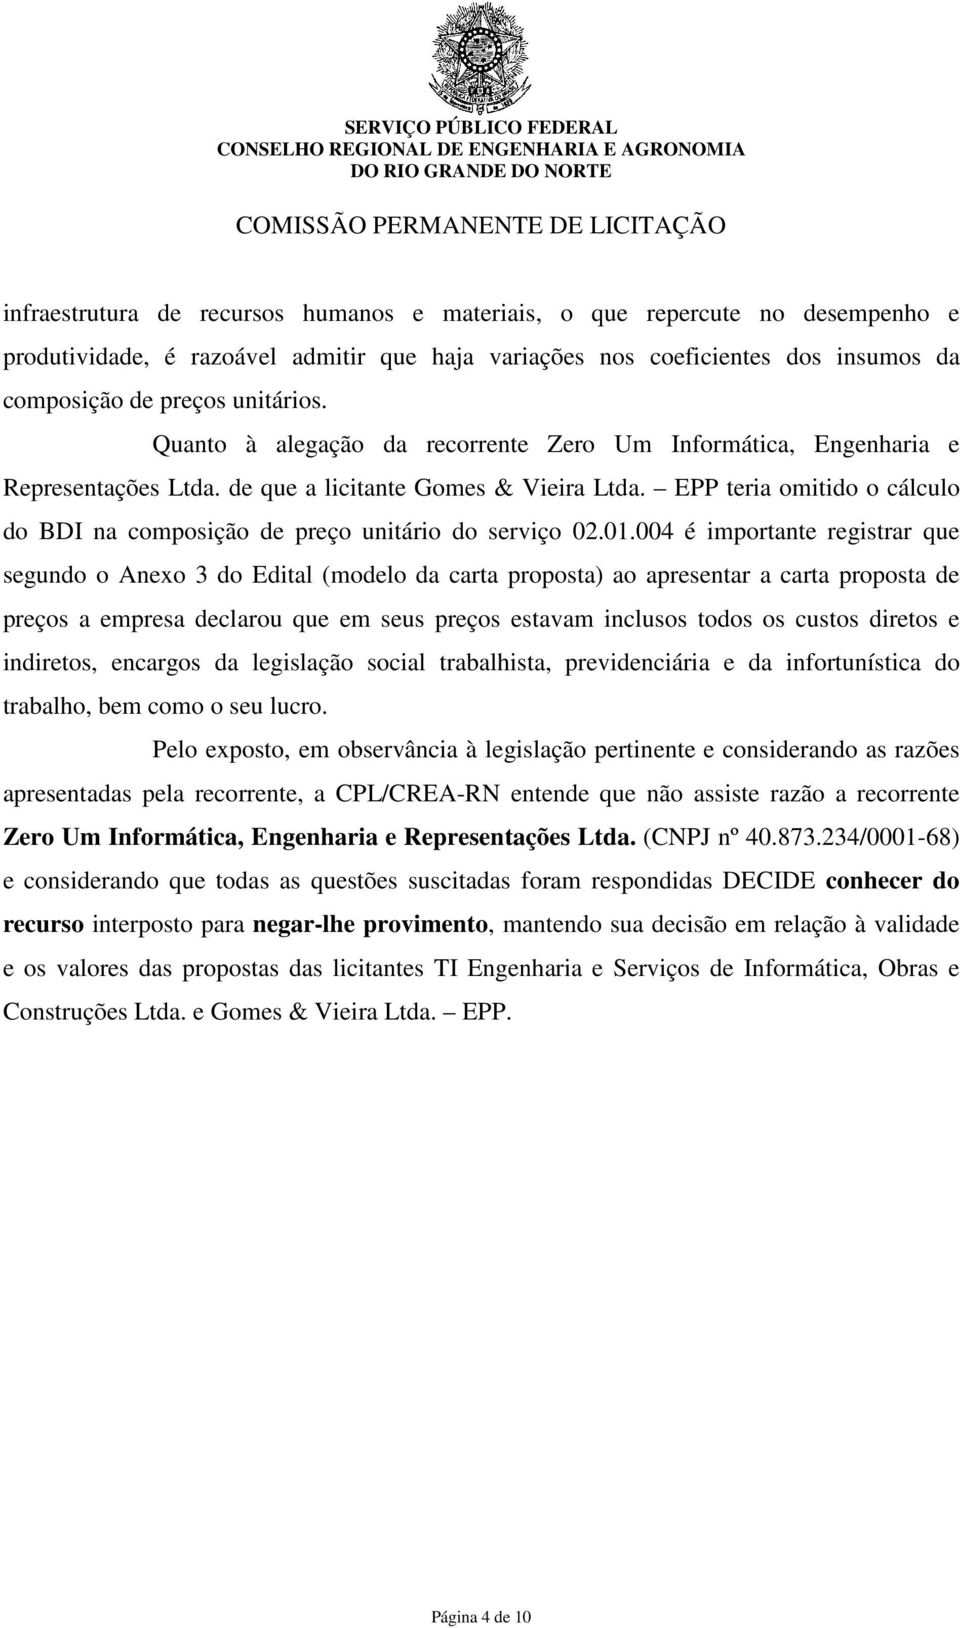 EPP teria omitido o cálculo do BDI na composição de preço unitário do serviço 02.01.